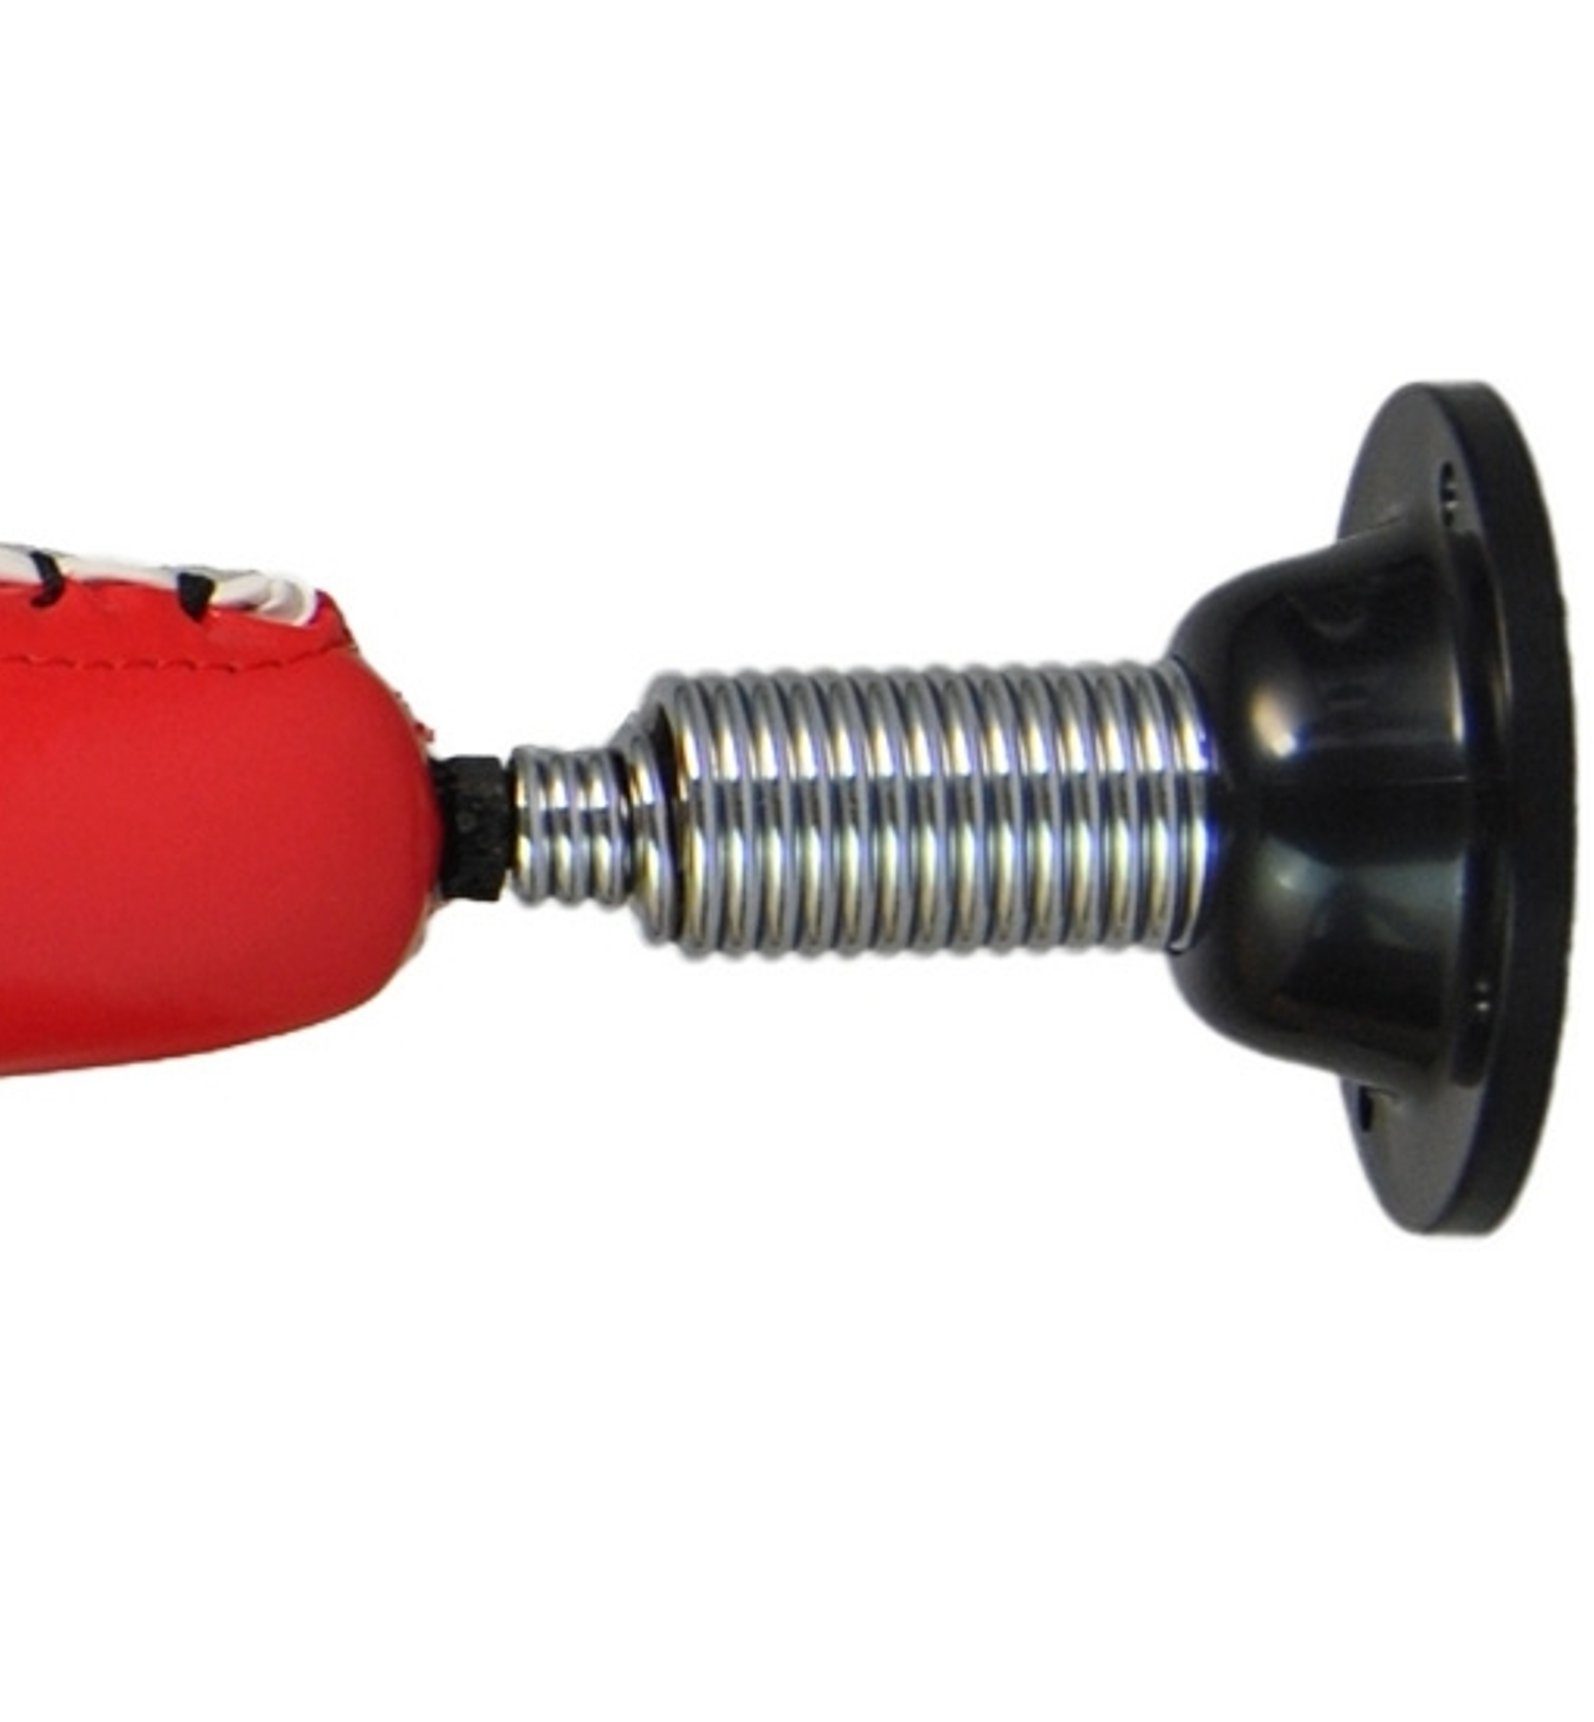 Sport Kampfsportausrüstung BAY-Sports Doppelendball Wandschlagpolster mit Feder Schlagkissen Wandmontage Wandbefestigung Schlagm